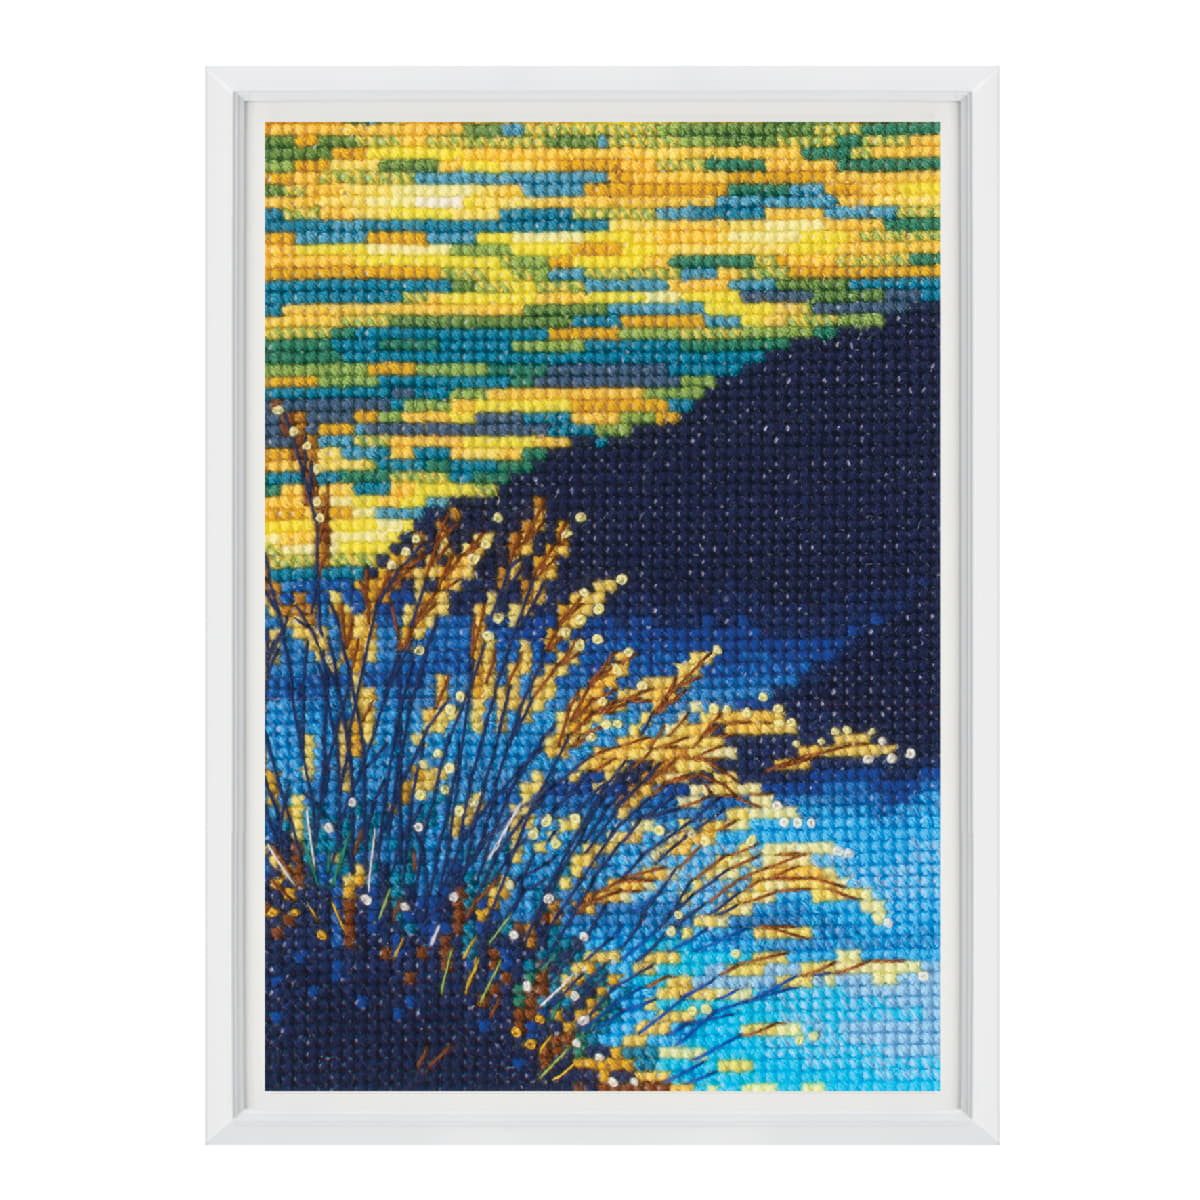 RTO Kreativset RTO Kreuzstich Stickpackung "Sonne in den Wolken", Zählmuster, 9x13cm, (embroidery kit by Marussia)